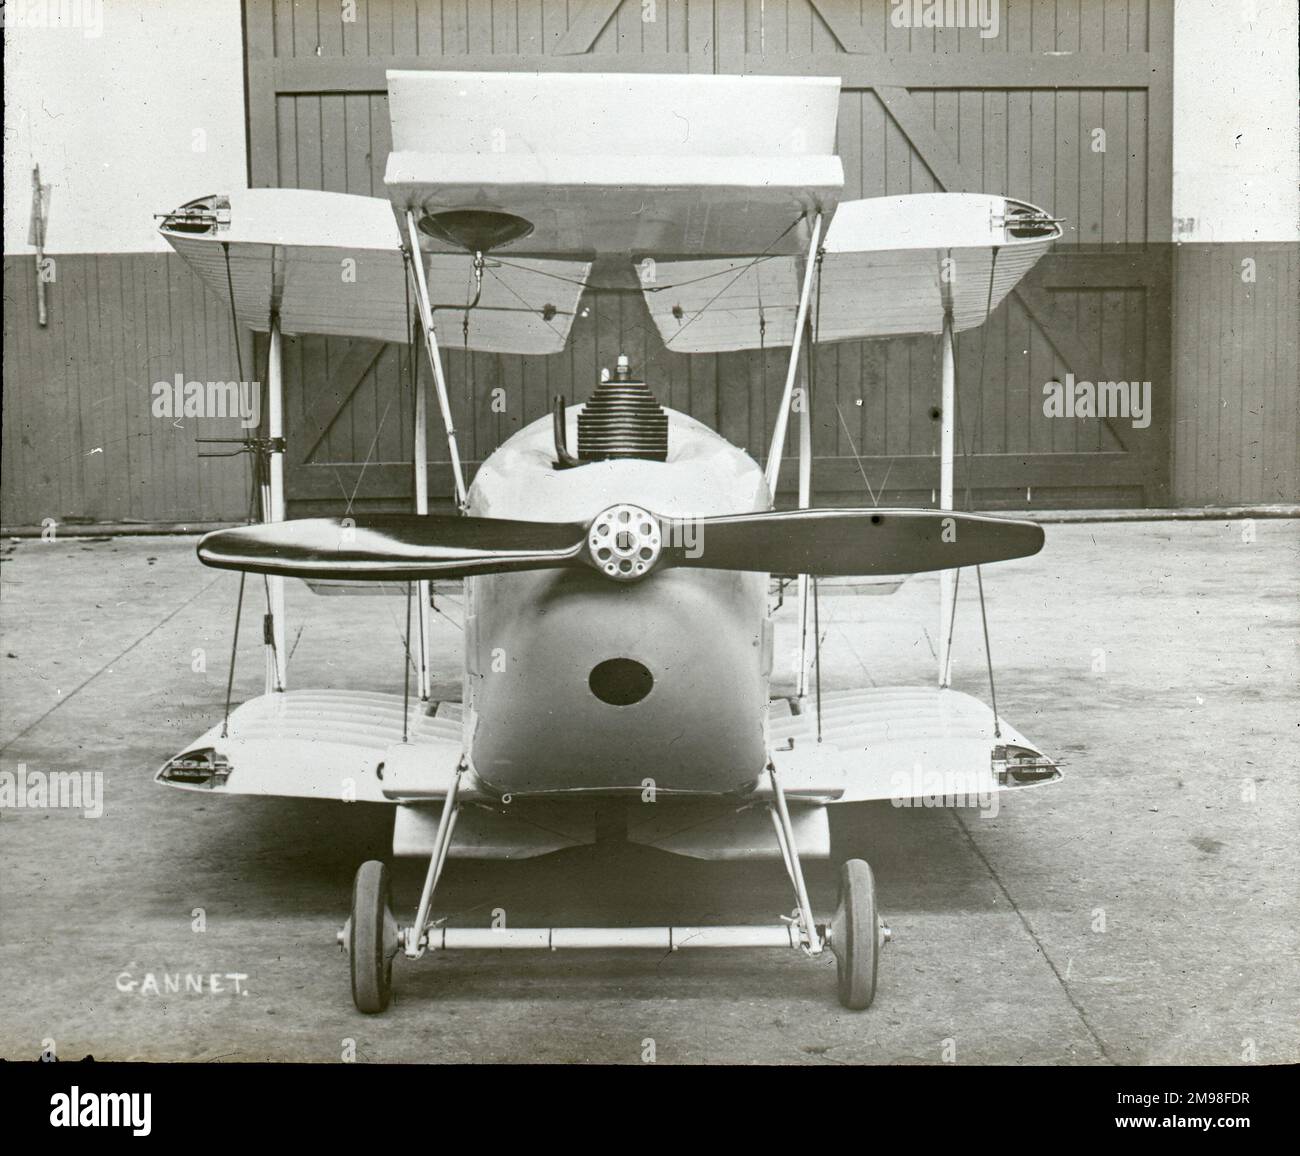 Gloster Gannet, G-EBHU, mit nach hinten geklappten Flügeln. Stockfoto